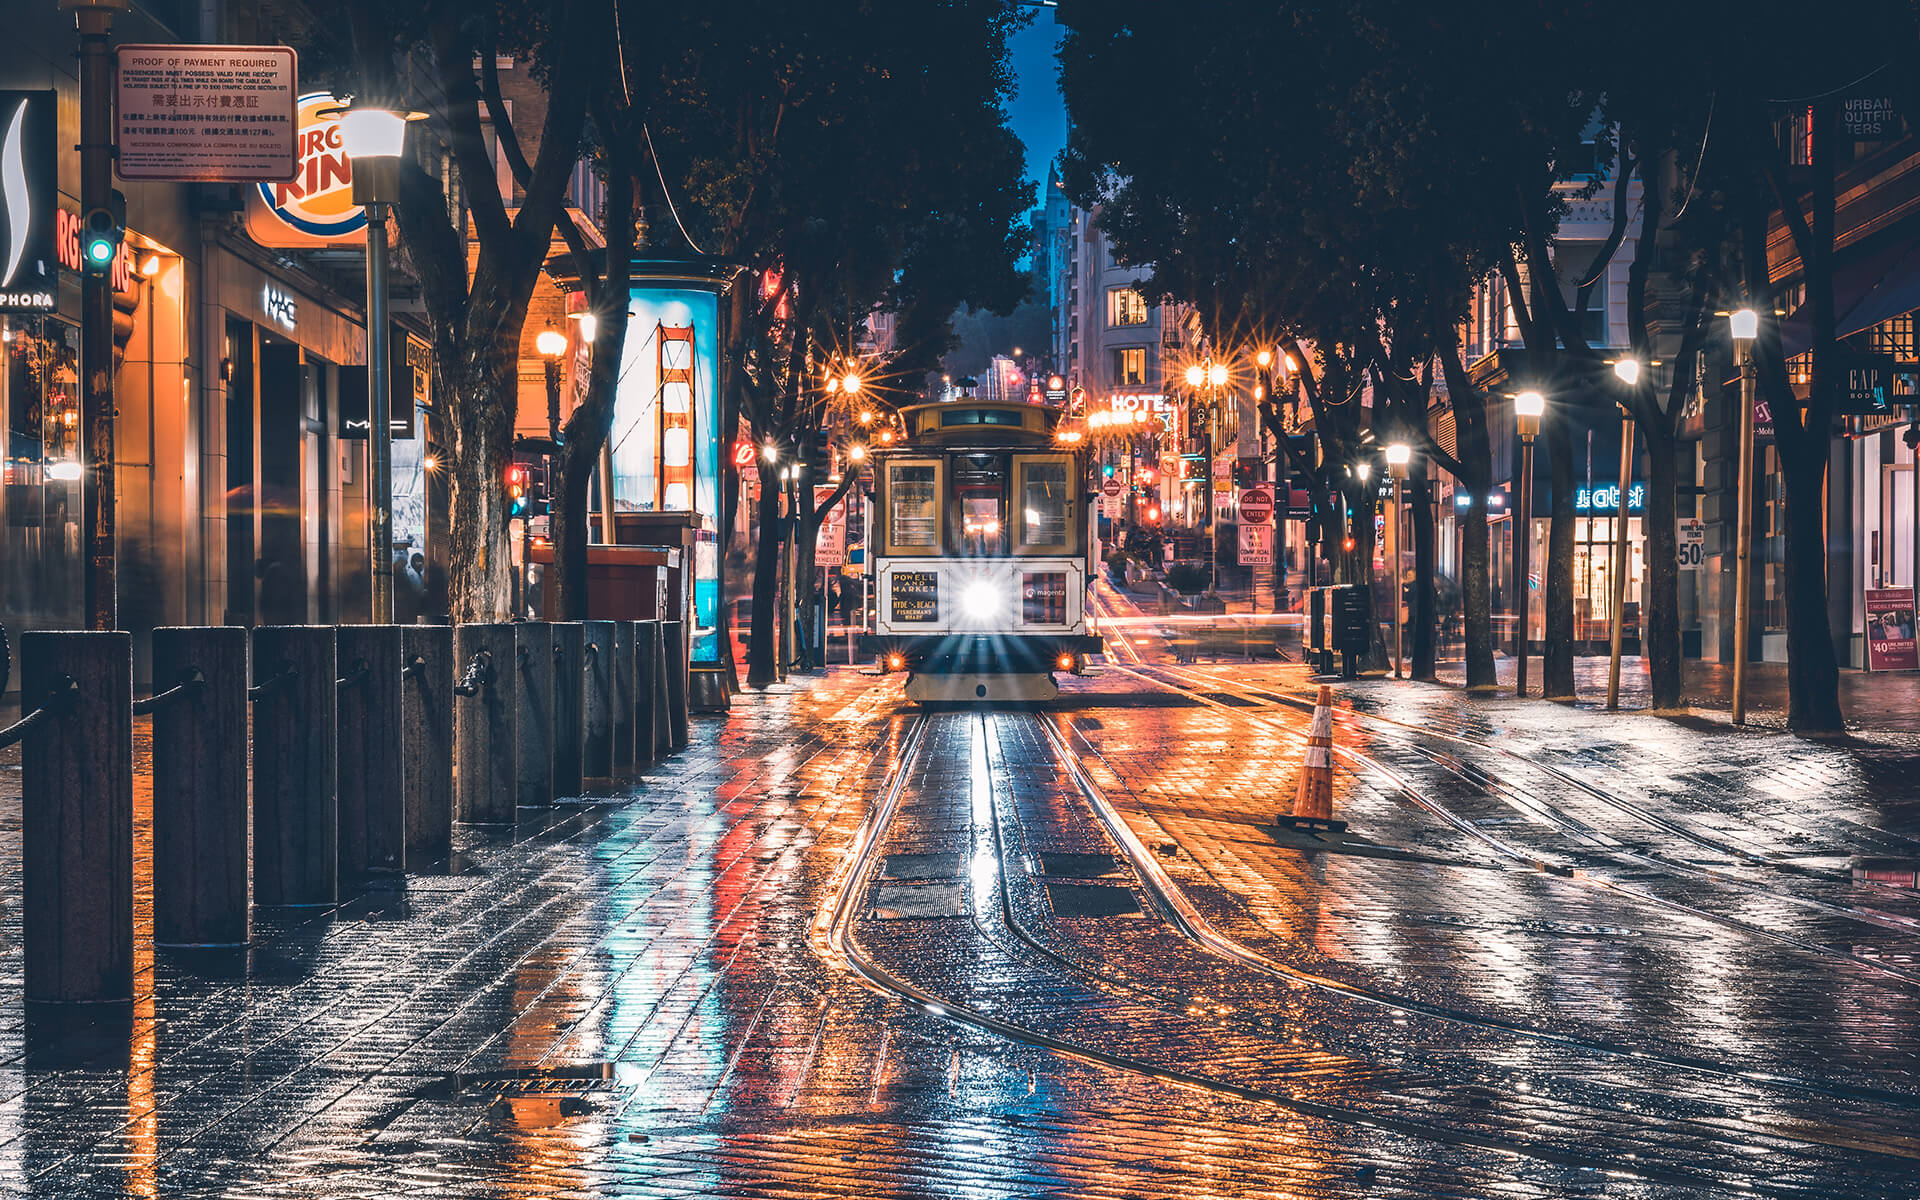 Cùng chiêm ngưỡng hình nền đường phố mưa đầy lãng mạn, hình ảnh sẽ đưa bạn đến những con đường bởi màn mưa rơi làm ướt những tán cây và lấp lánh những đóm đèn. Một khung cảnh đặc biệt sẽ khiến bạn cảm thấy như mình đang tự mình đi dạo trên phố với không khí mưa tĩnh lặng nhưng đầy say đắm.